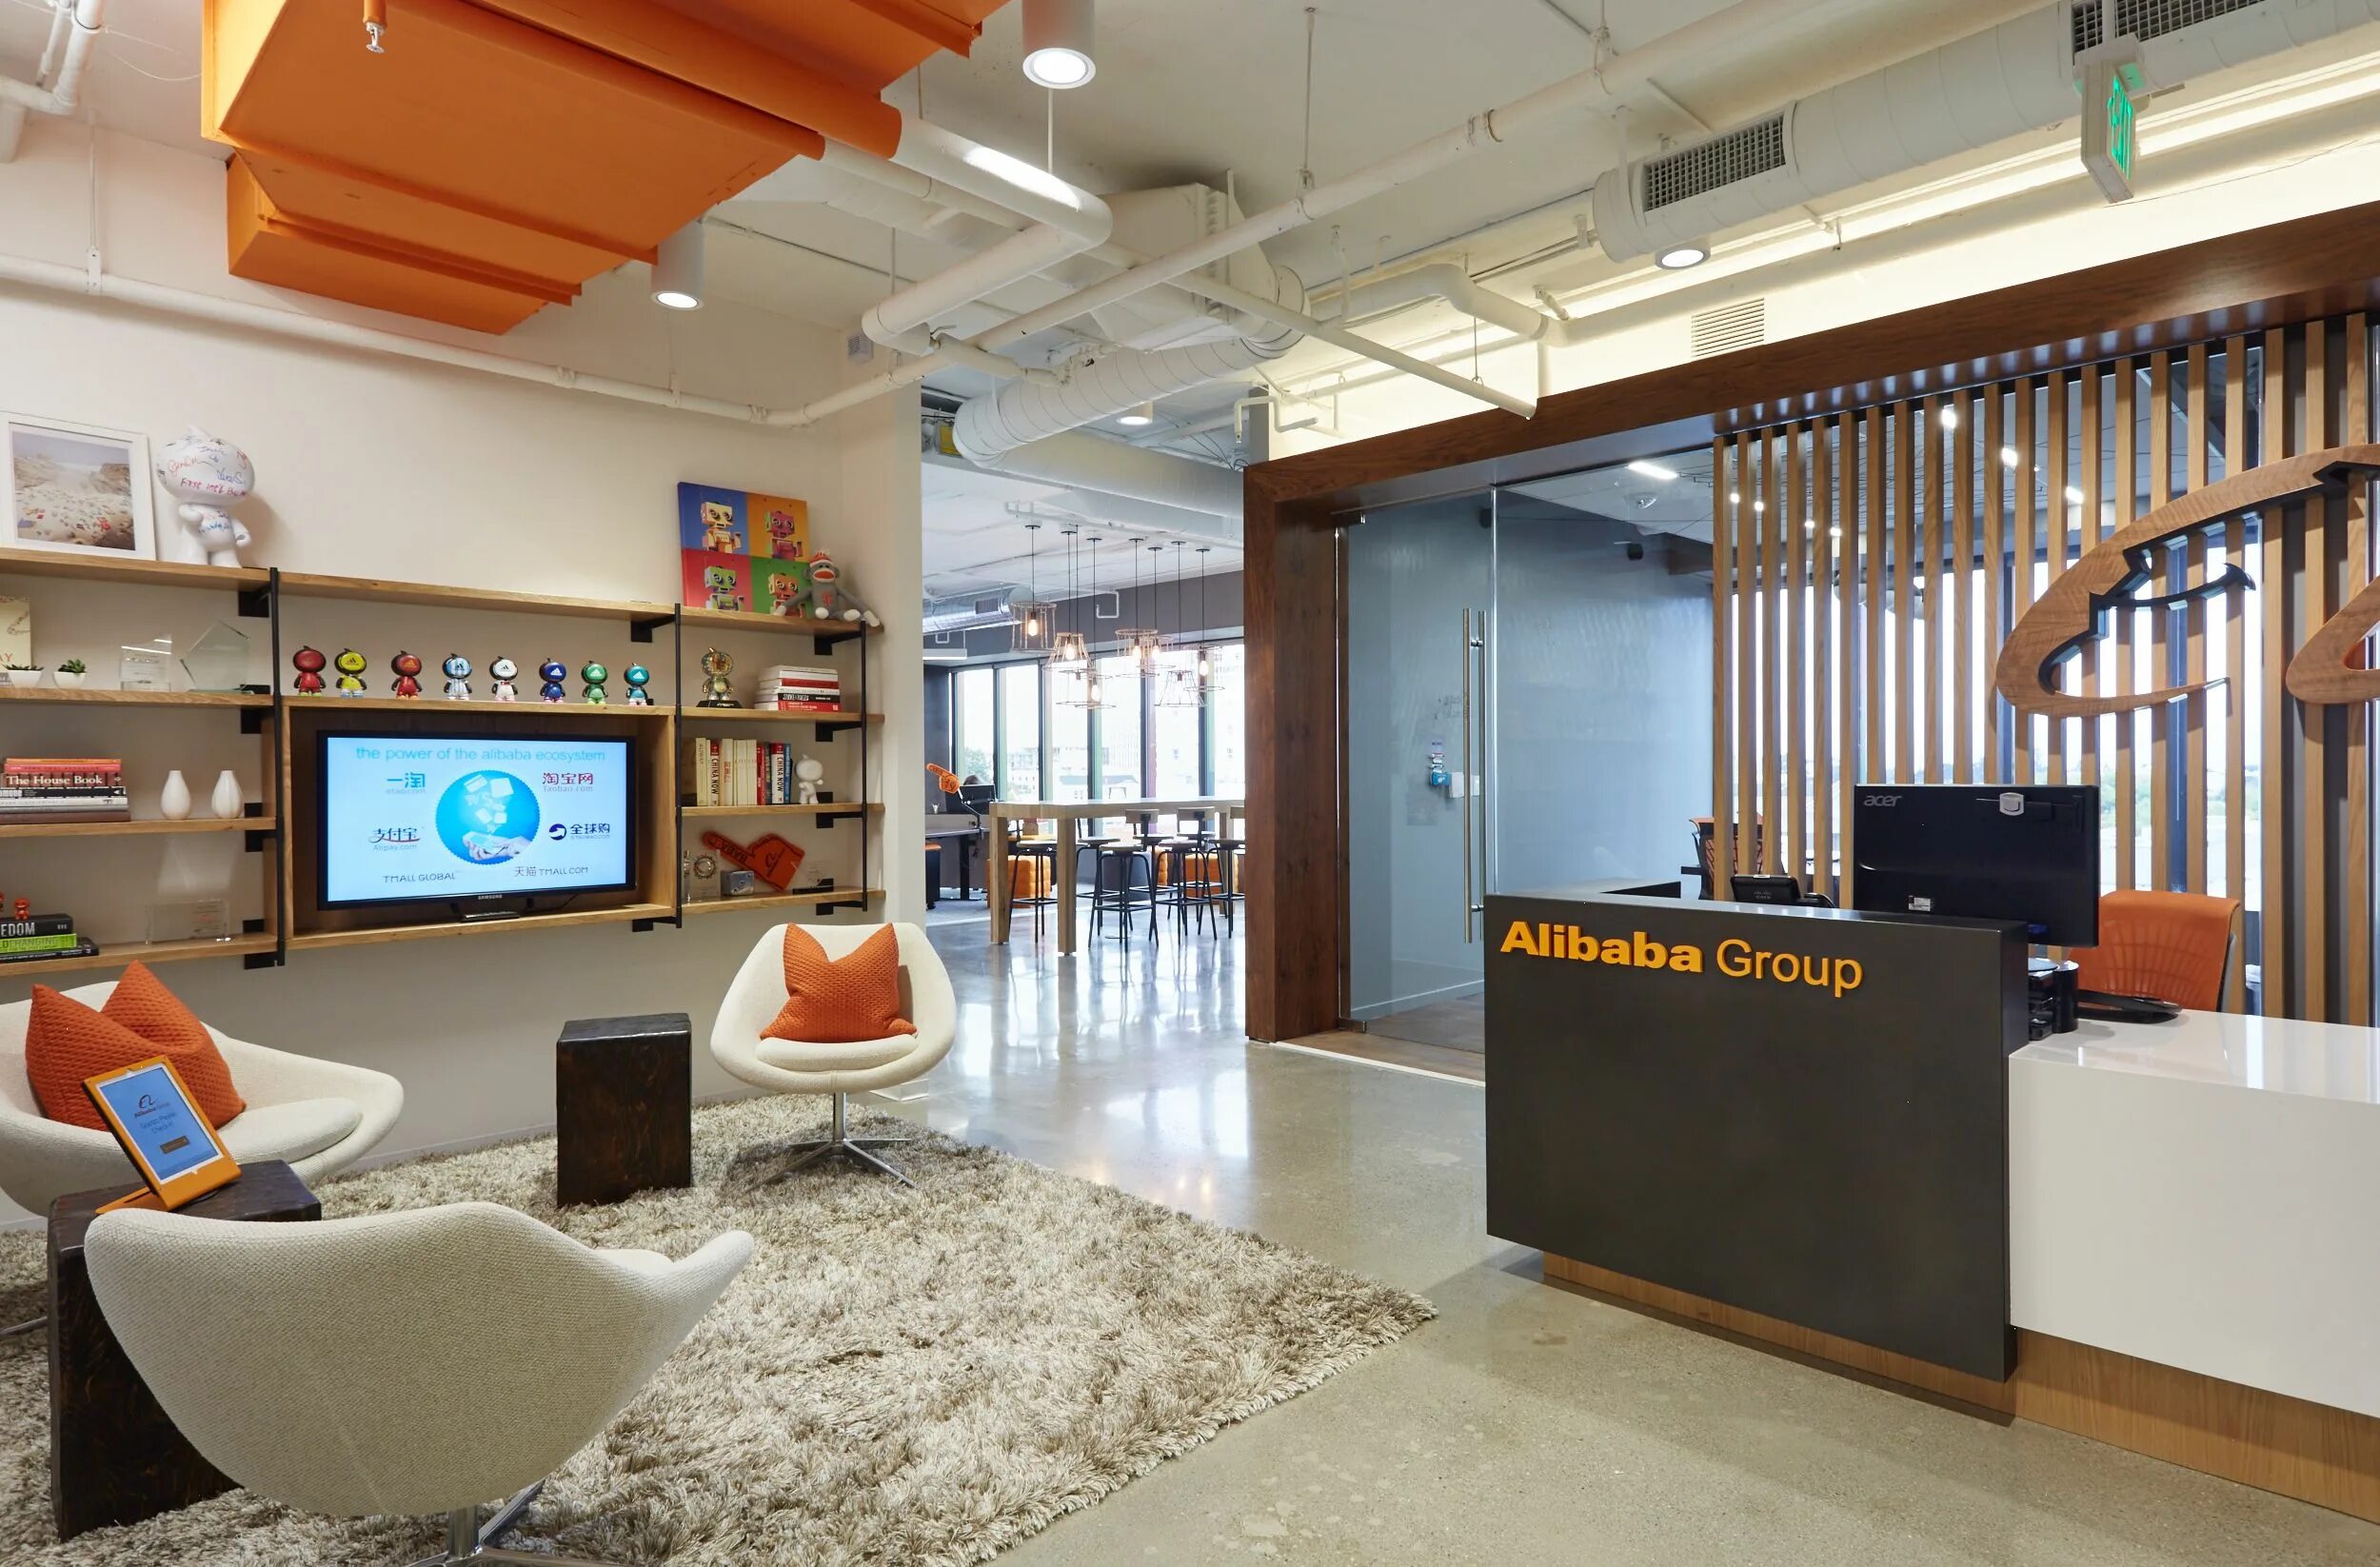 Офис Москва Сити. Alibaba Group офис. Кабинет групп сайт